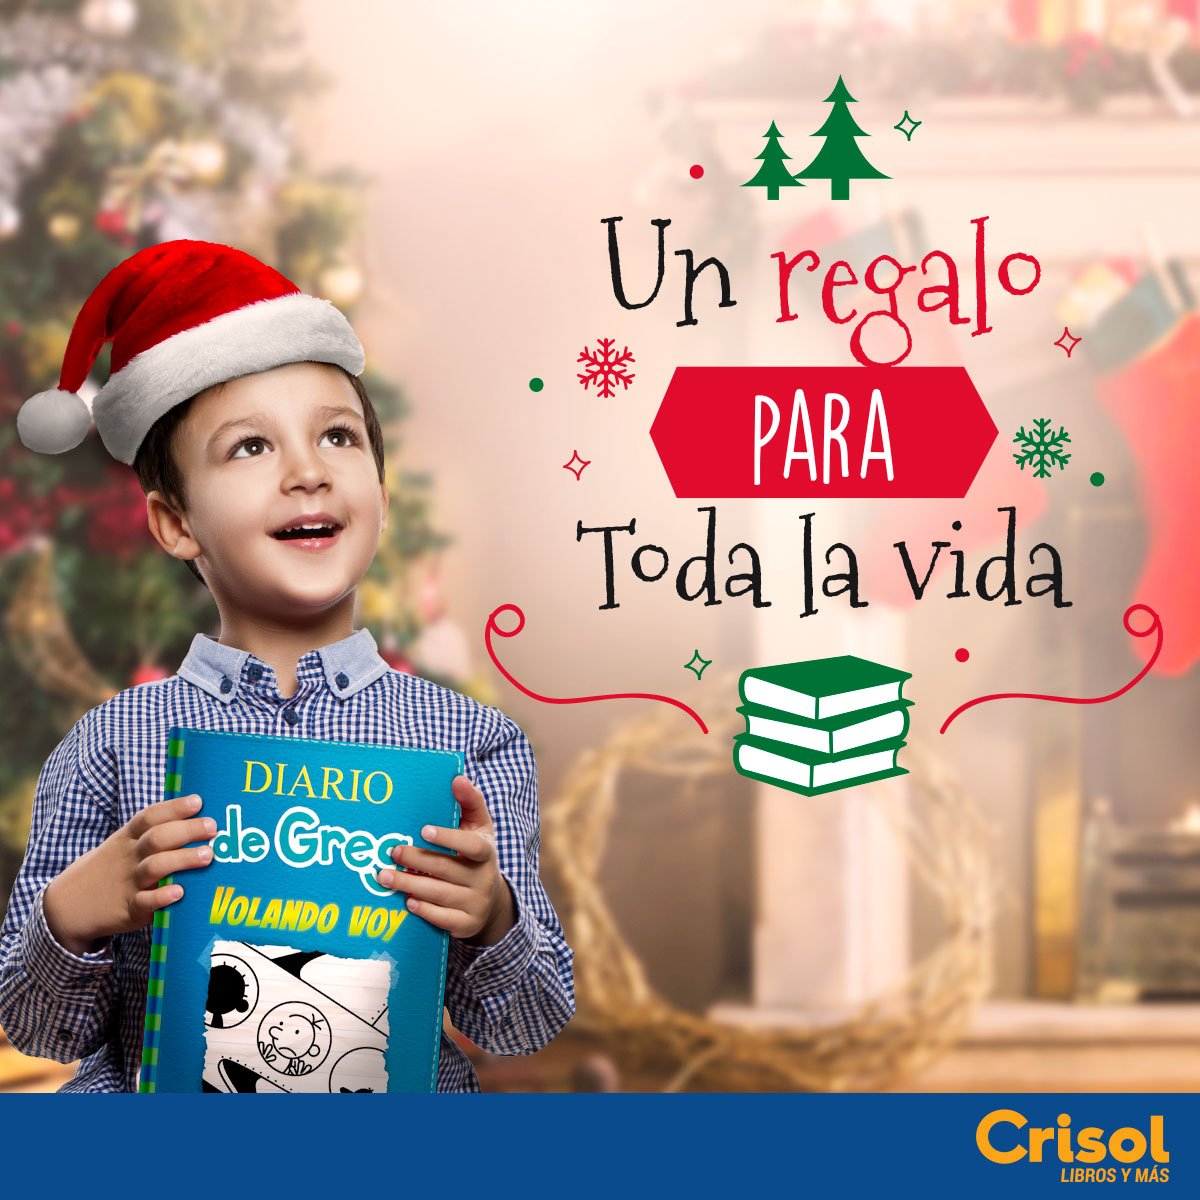 Librerías Crisol on X: 🎁¡UN REGALO PARA TODA LA VIDA!🛍Se acerca la  Navidad y en Librerías Crisol creemos que un regalo para toda la vida es la  experiencia de vivir increíbles aventuras